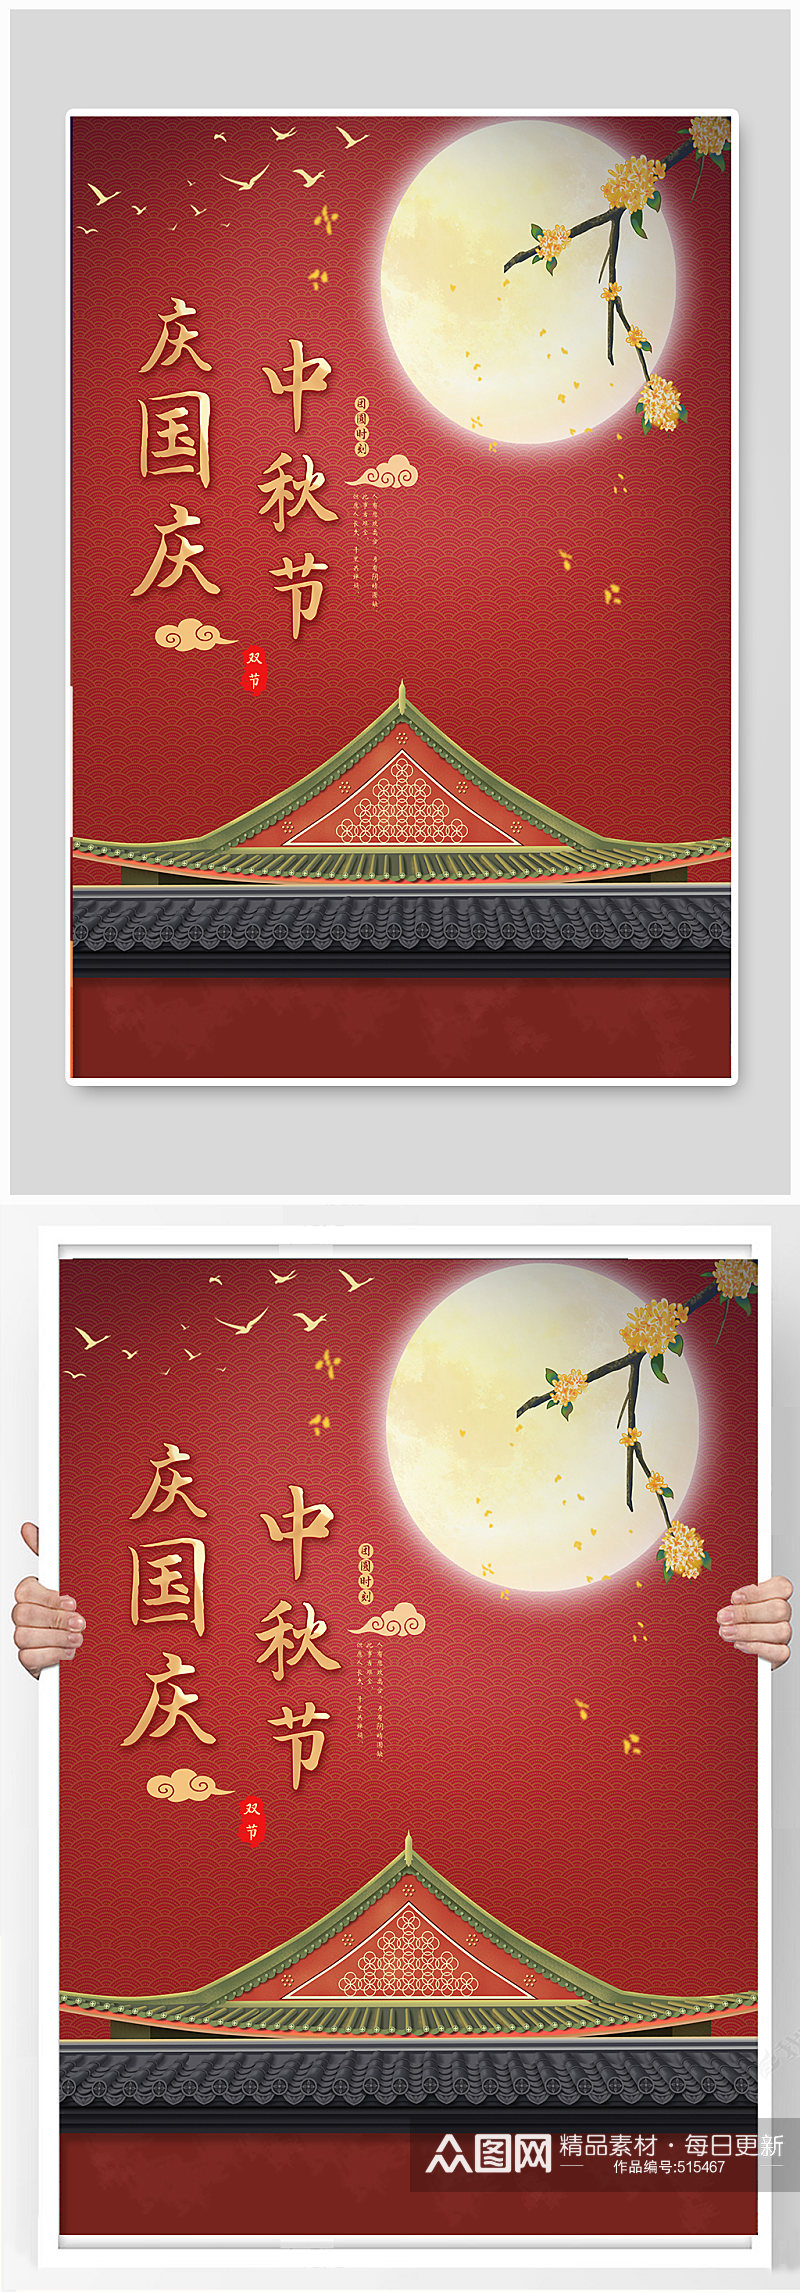 国庆中秋节创意宣传海报素材